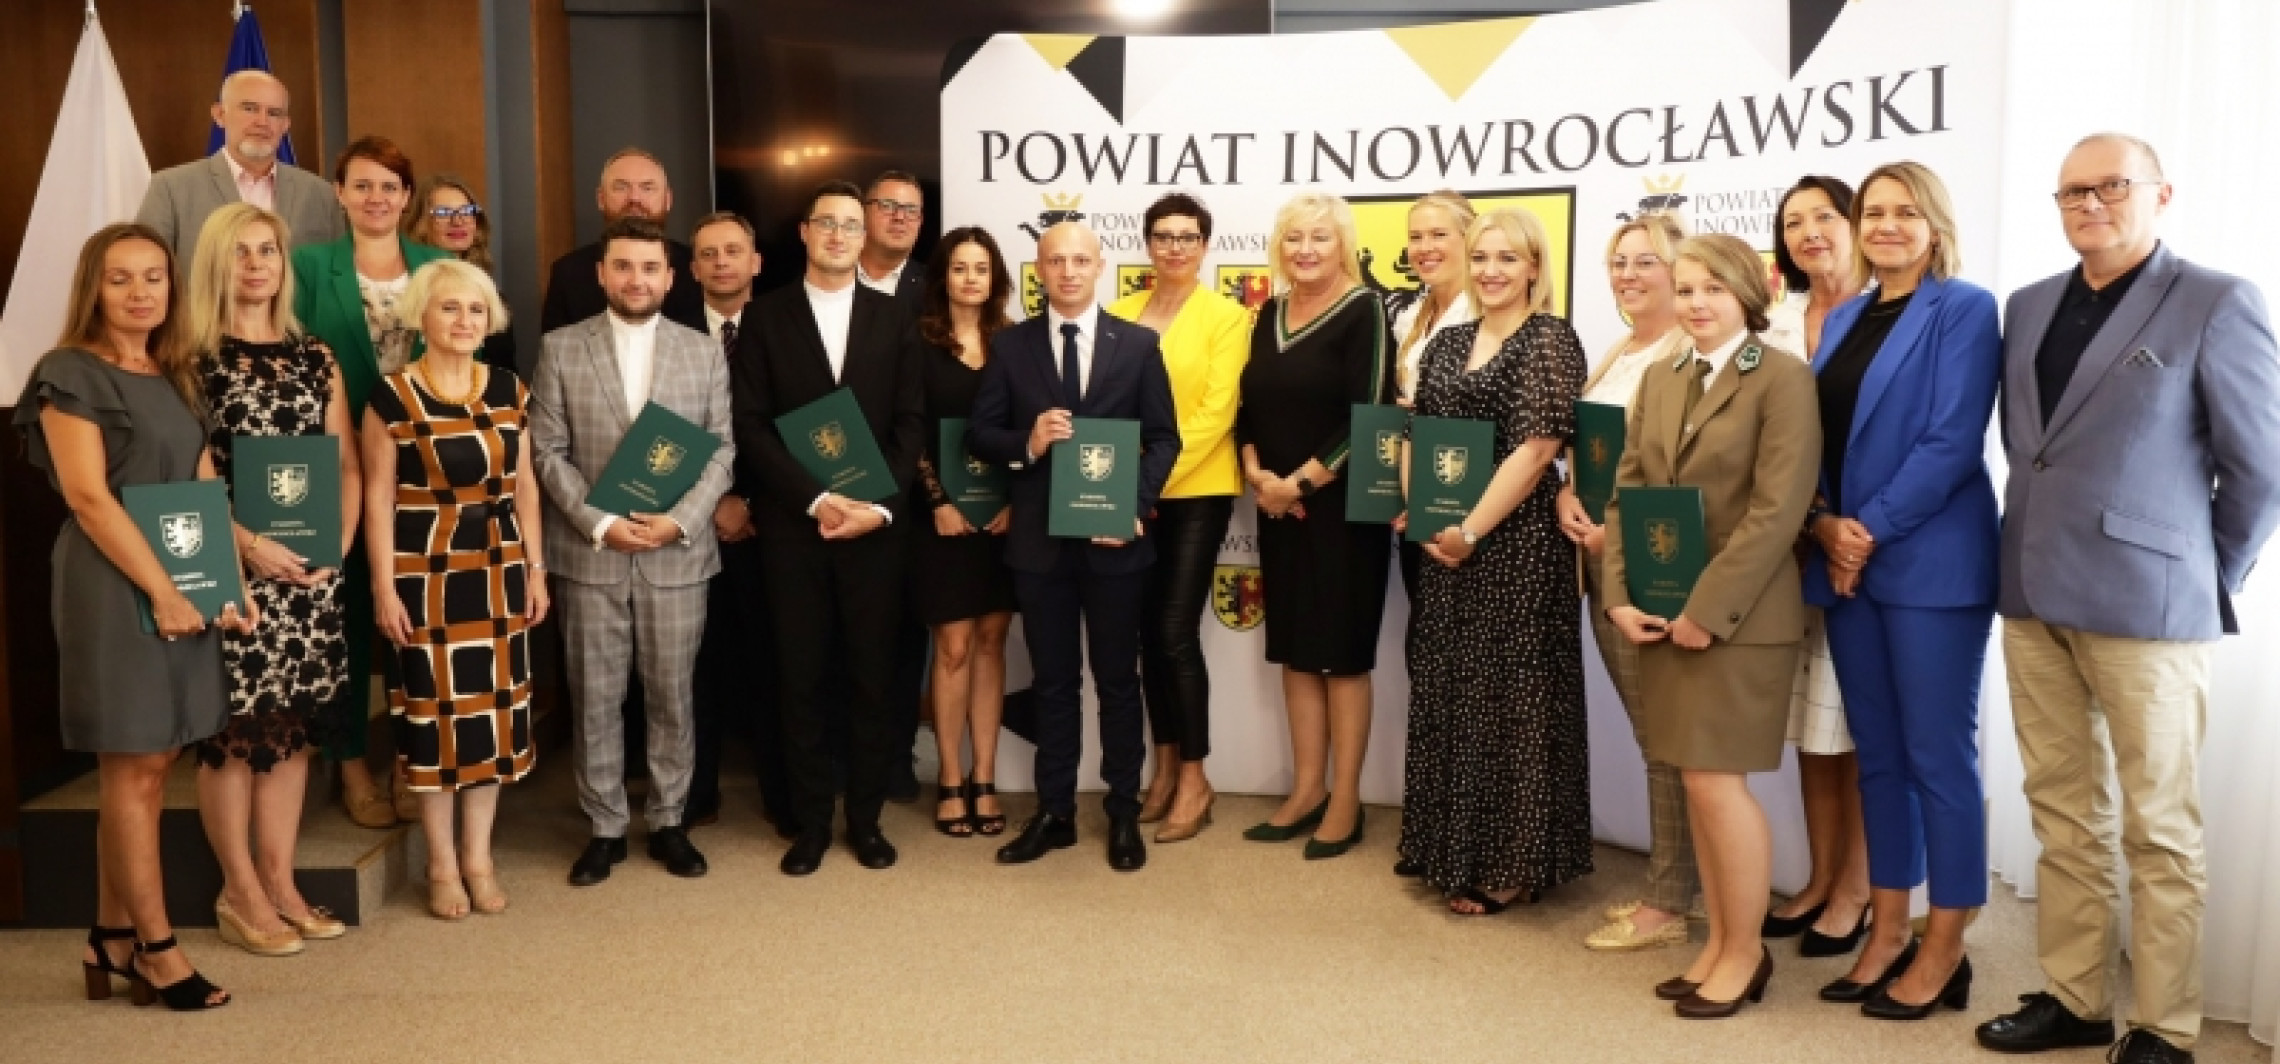 Inowrocław - Awans na wyższy stopień otrzymało 12 nauczycieli